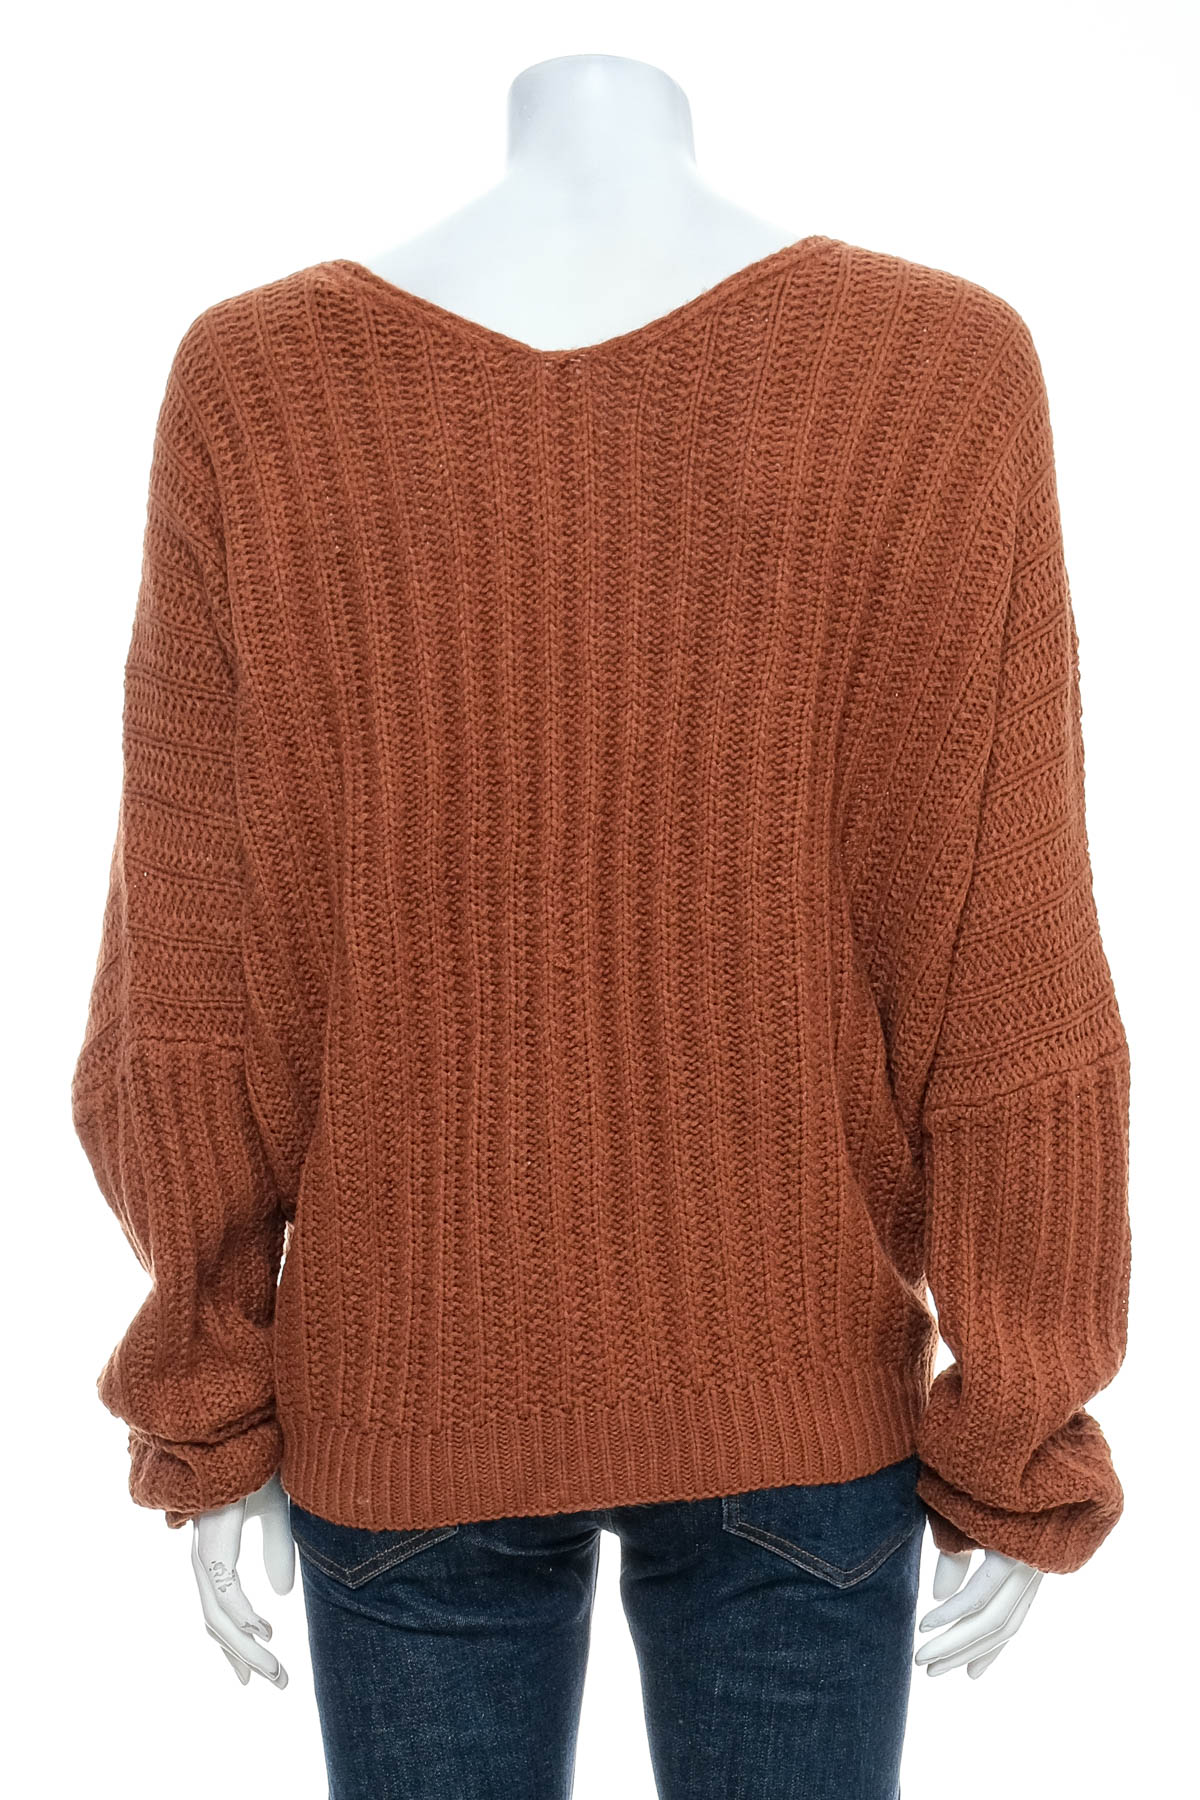 Women's sweater - Rue 21 - 1